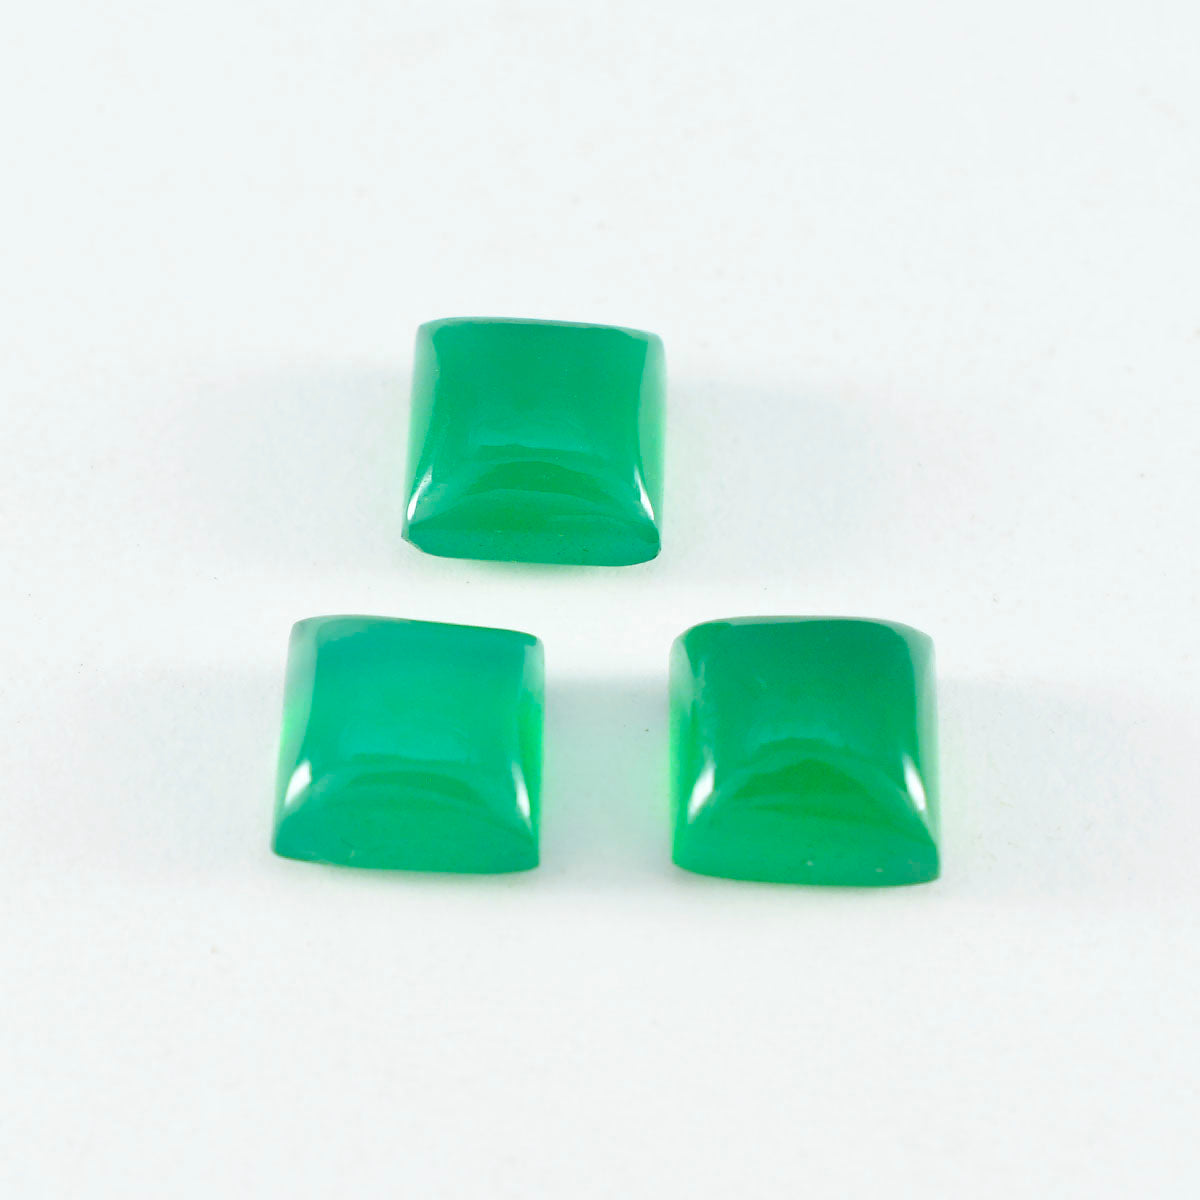 Riyogems 1 Stück grüner Onyx-Cabochon, 9 x 9 mm, quadratische Form, attraktiver Qualitäts-Edelstein